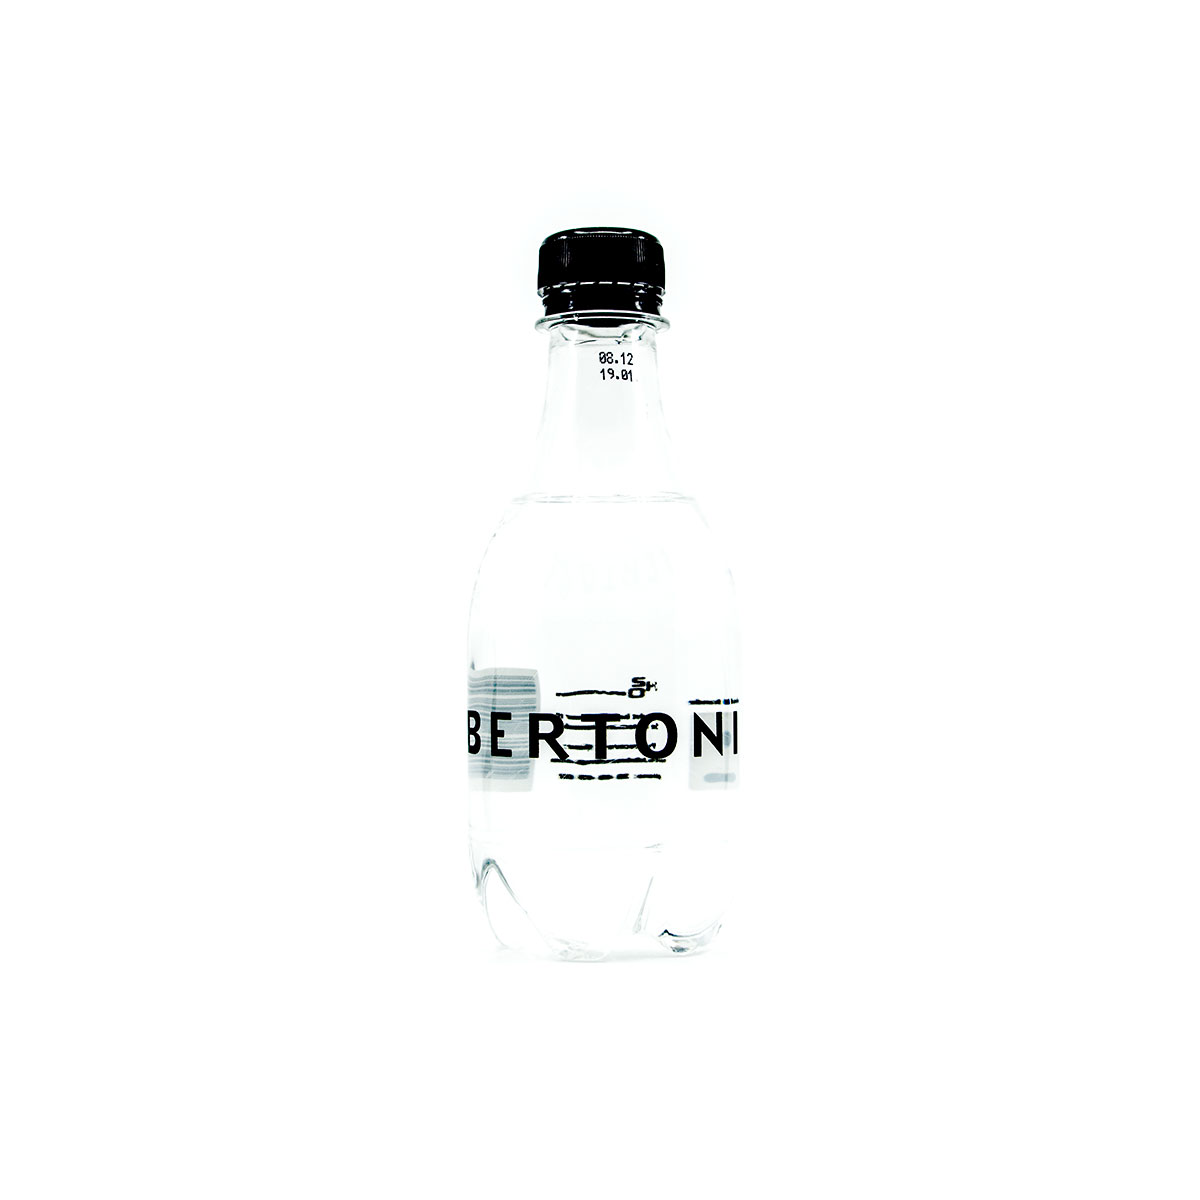 Portfolio med promotion vandflaske for Bertoni af freelance marketingkonsulent og freelance marketing konsulent i Randers Marketingsnedkeren